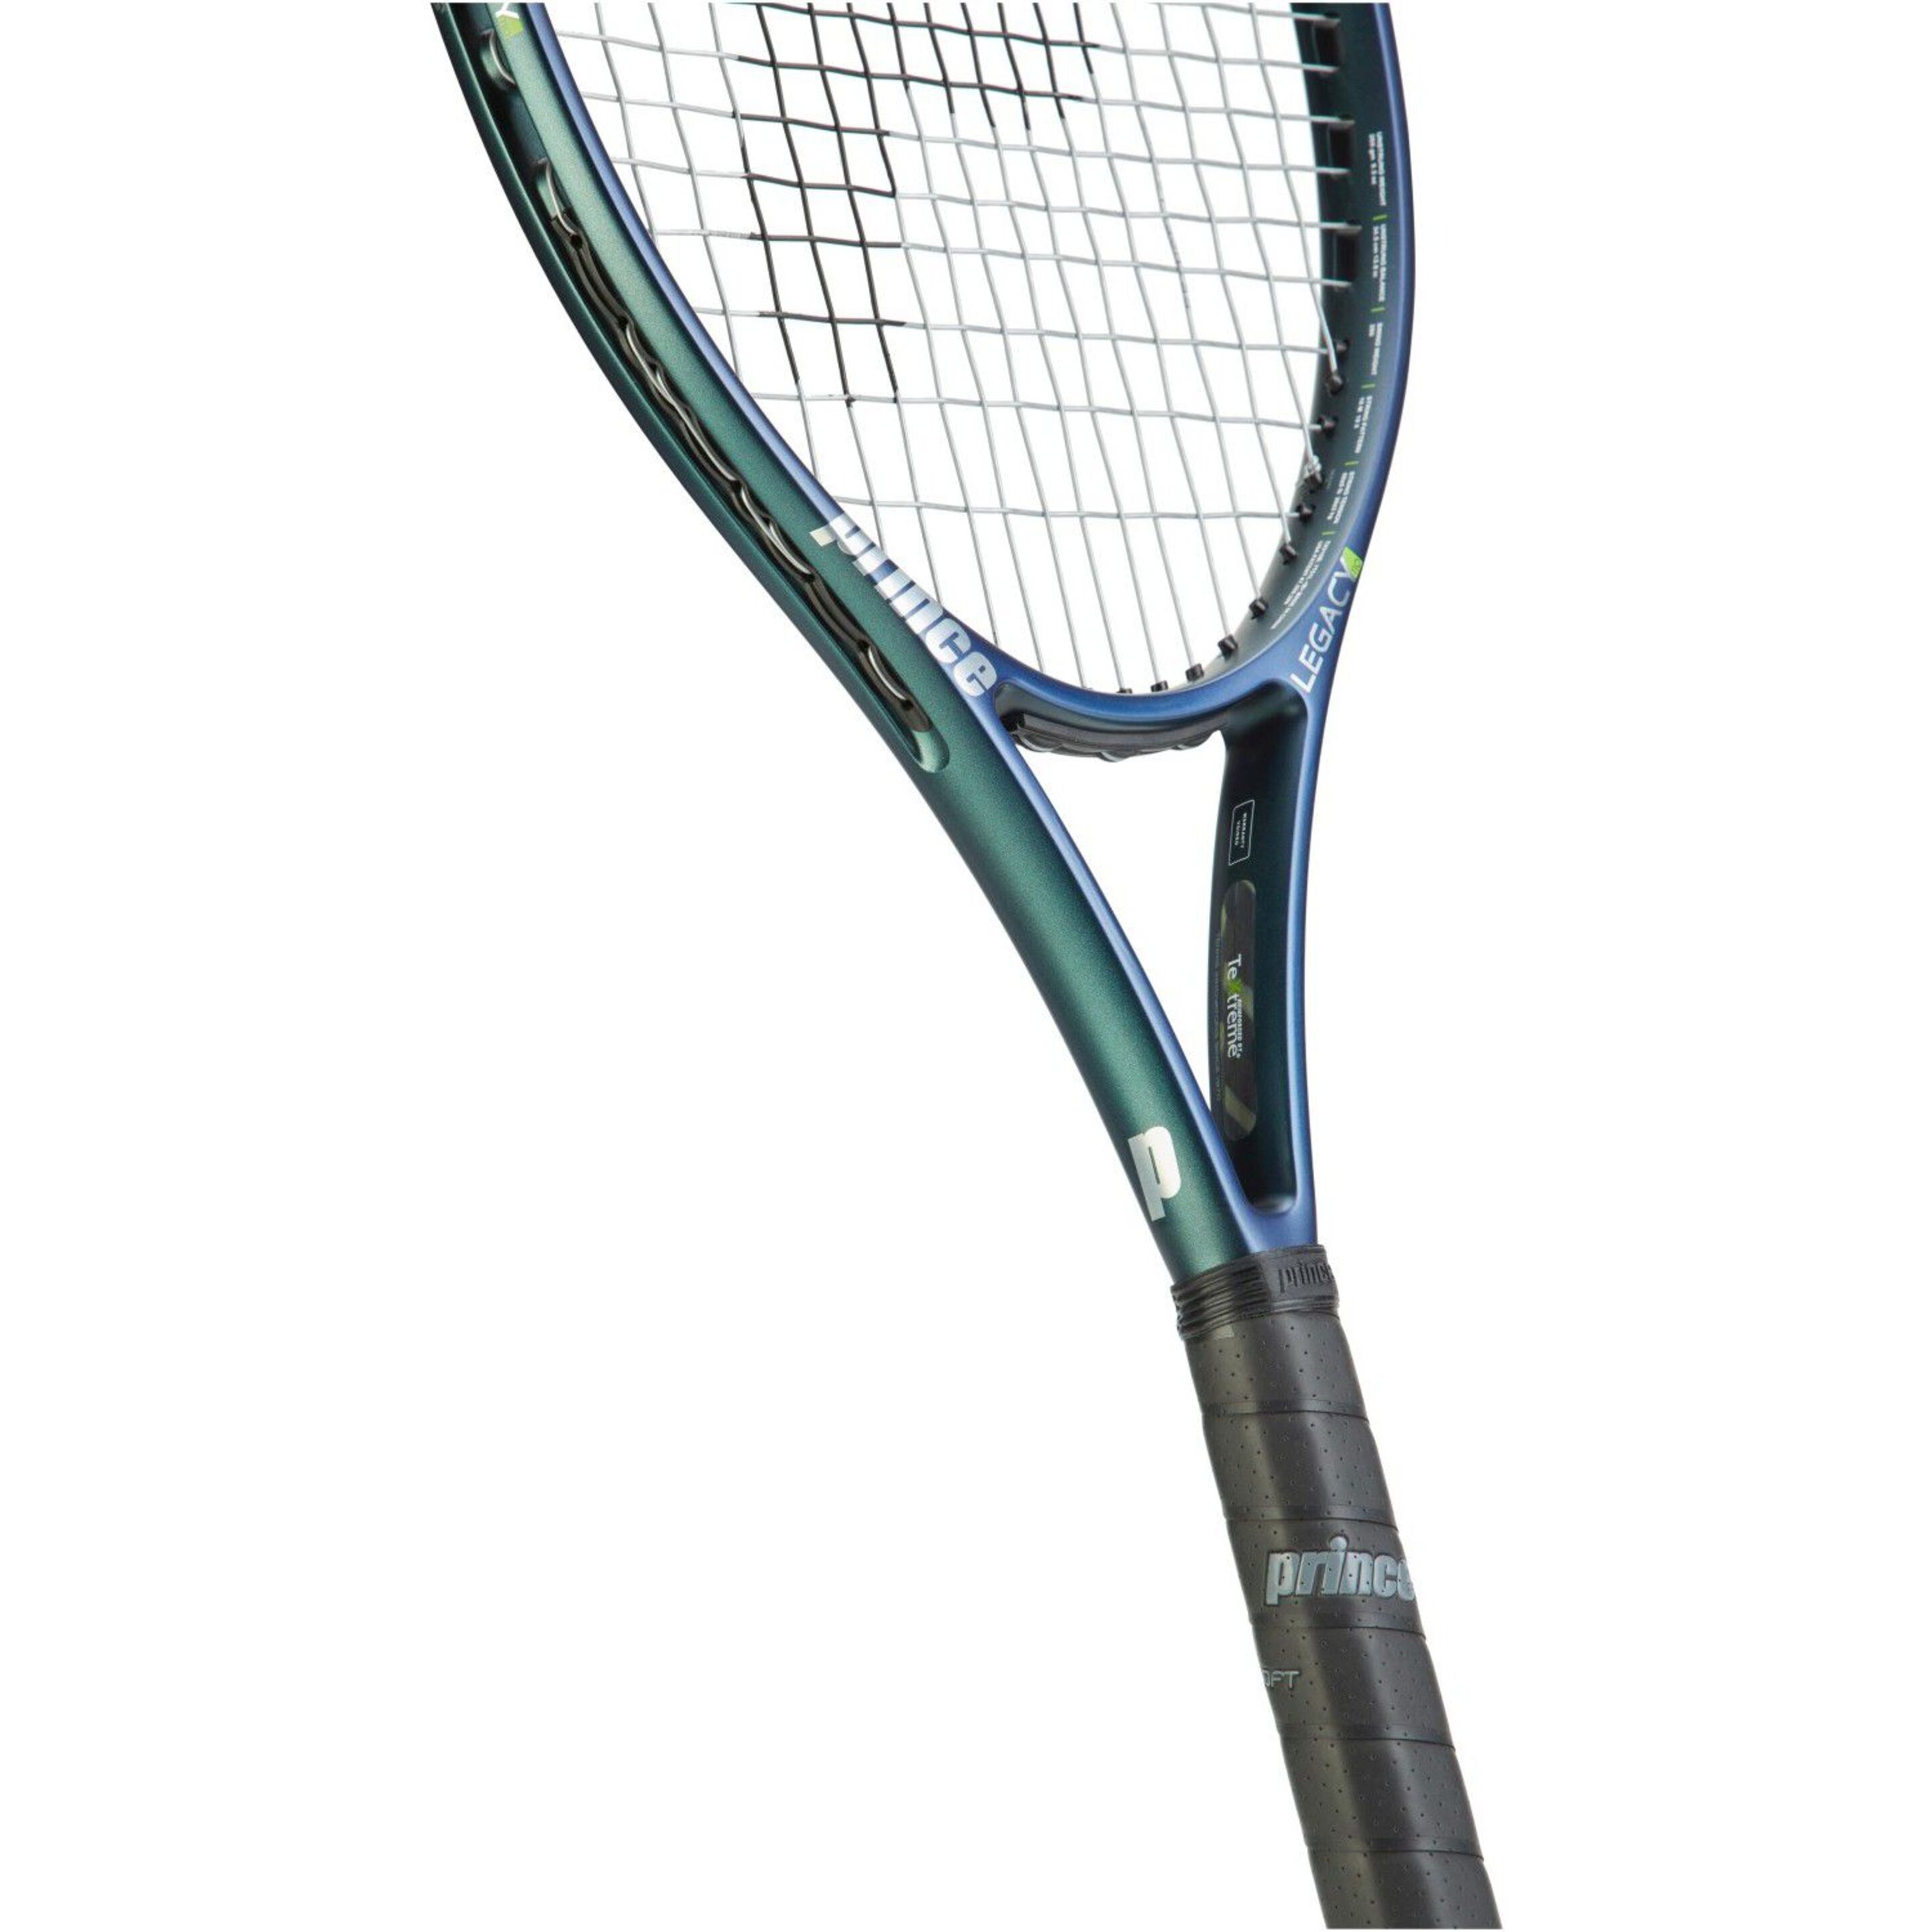 Raqueta De Tenis Prince Txt2.5 O3 Legacy 110 270 G (encordada Y Con Funda) - Multicolor  MKP